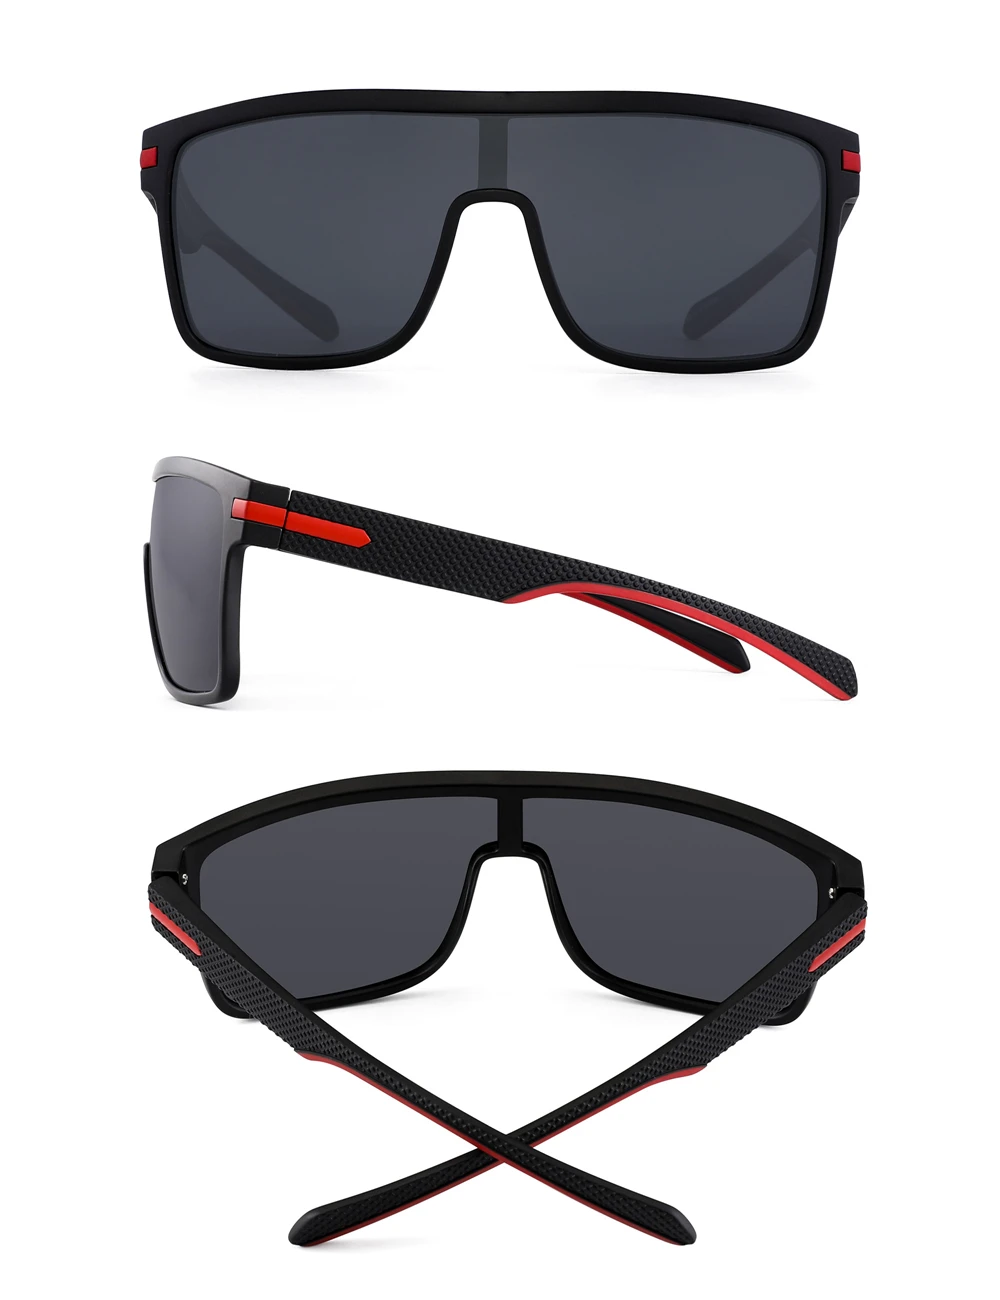 JM поляризационные солнцезащитные очки, Ретро стиль, плоский верх, квадратная оправа, очки для мужчин